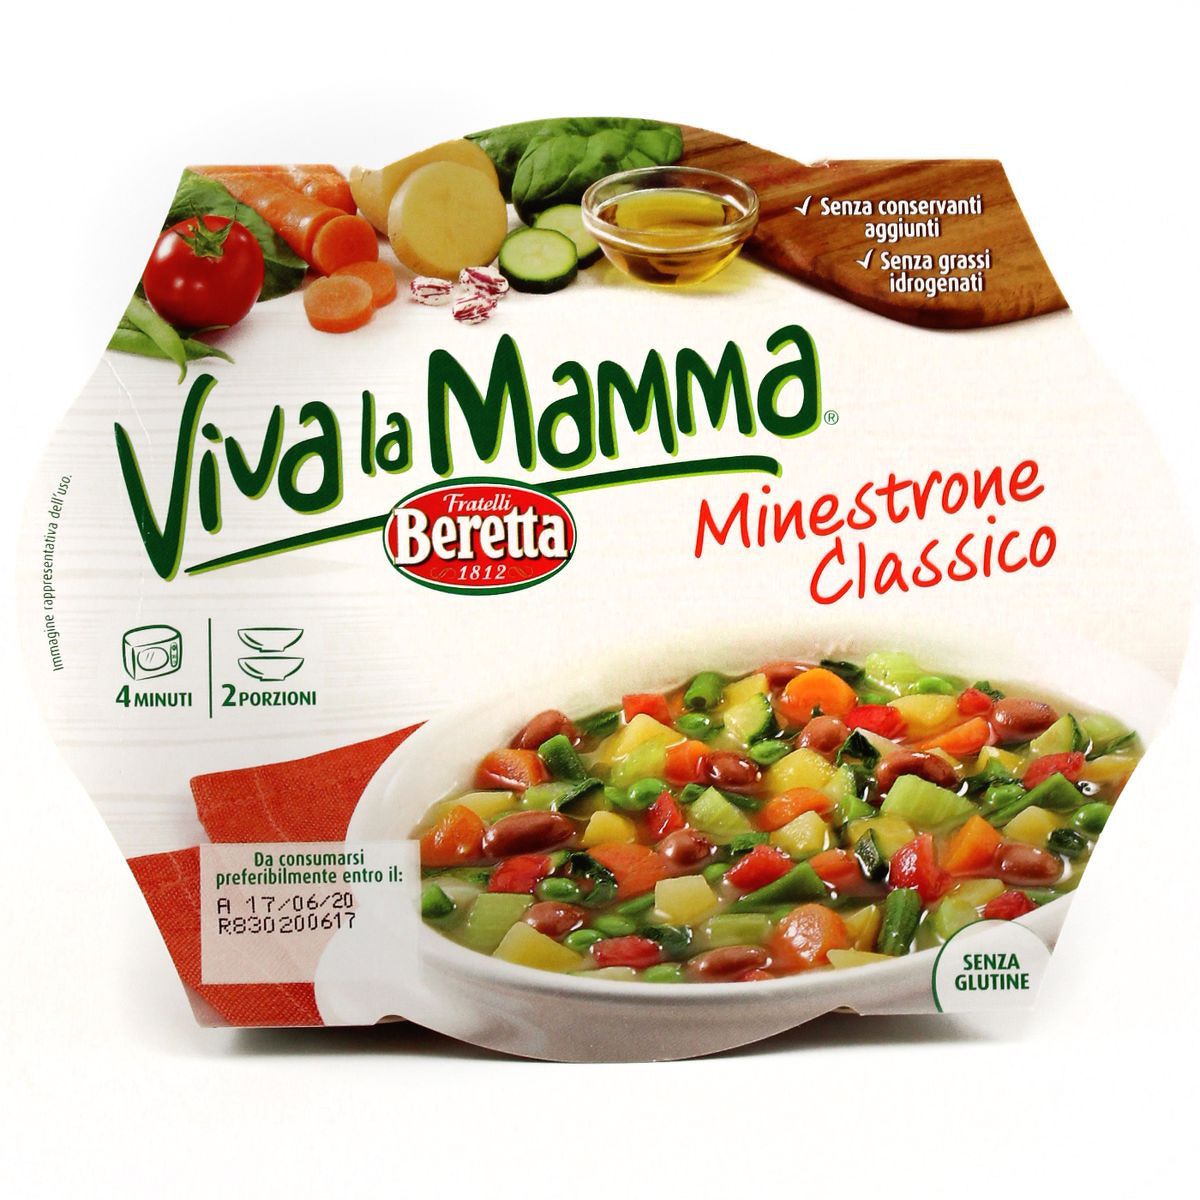 Beretta Viva la Mamma, Minestrone Classico 600g